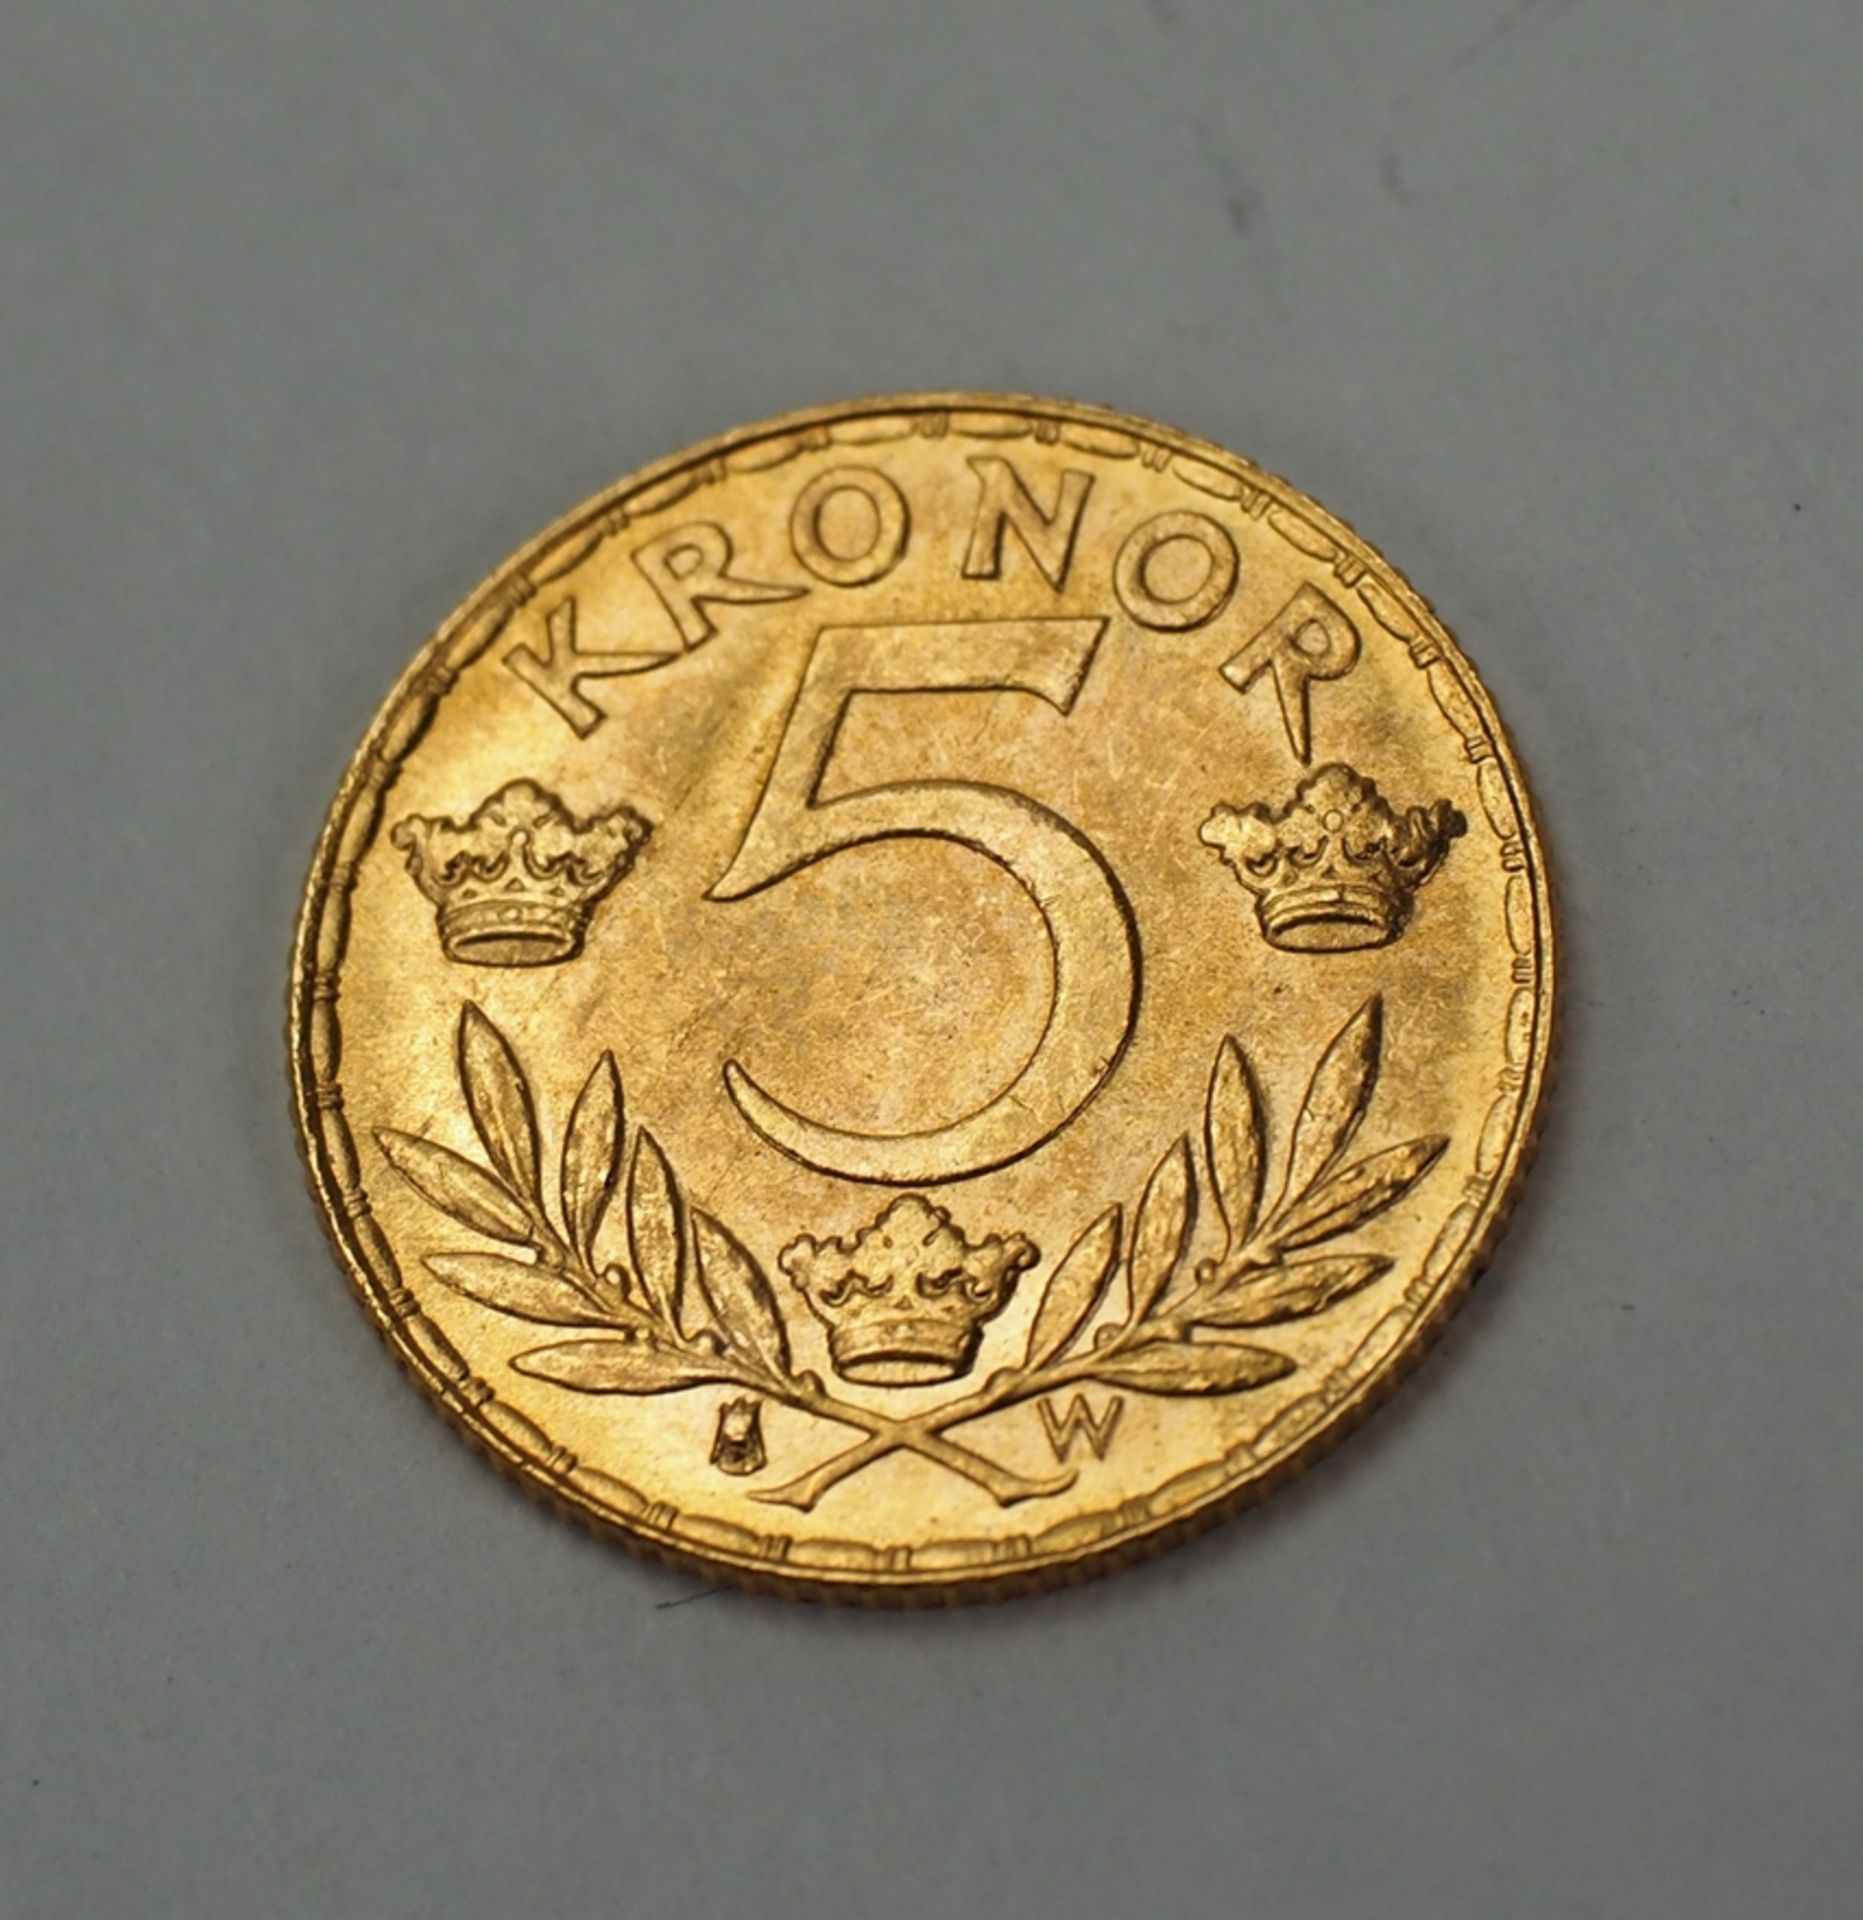 Schweden: 5 Kronen 1920 - GOLD. - Image 2 of 2